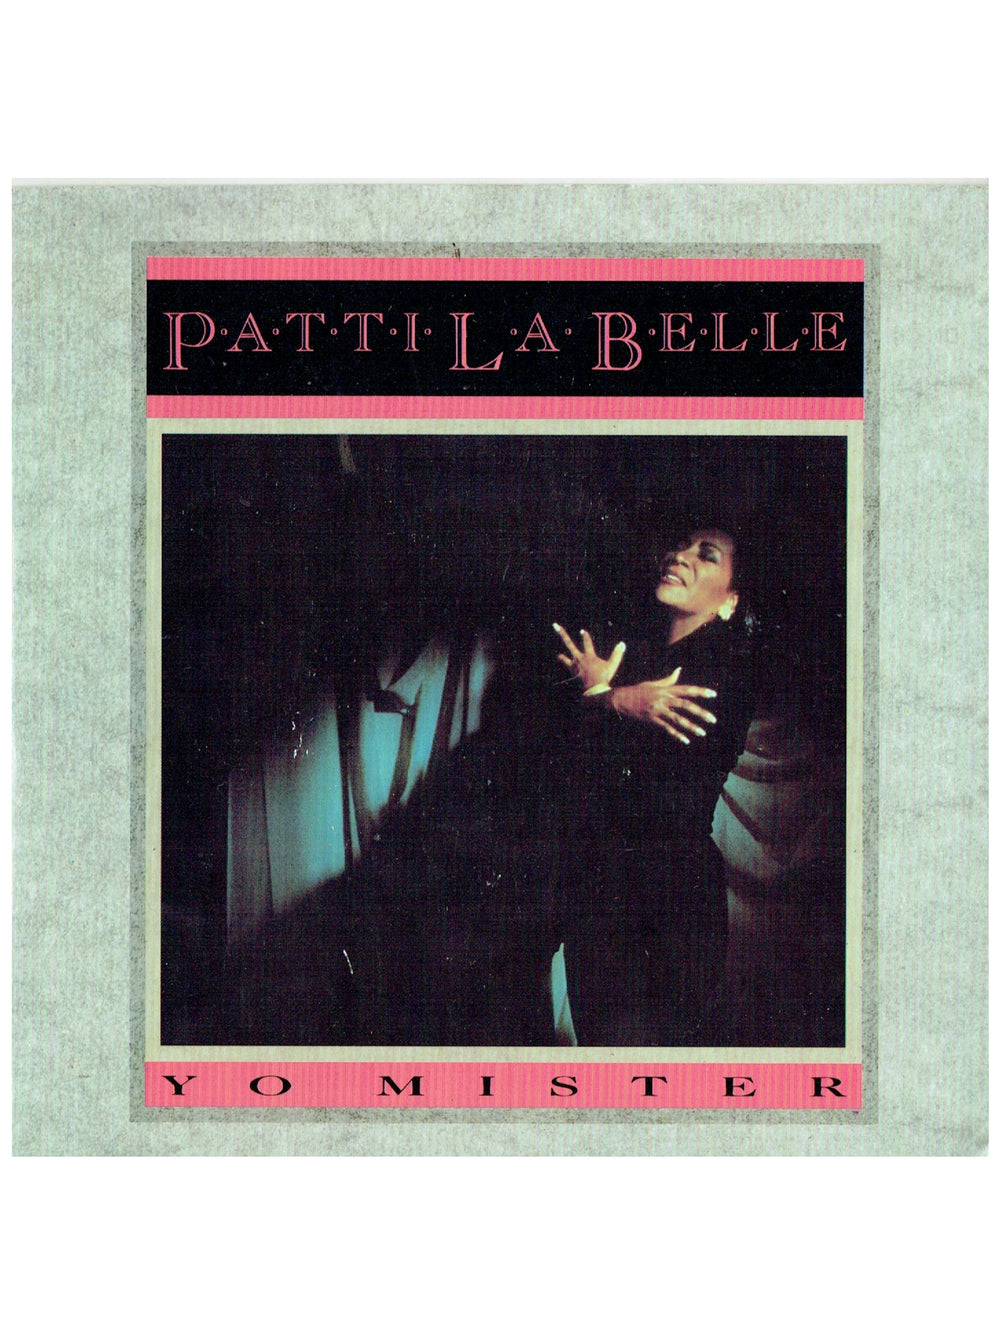 Prince – Patti La Belle Yo Mister 7 Inch Vinyl Single UK Release Written By Prince